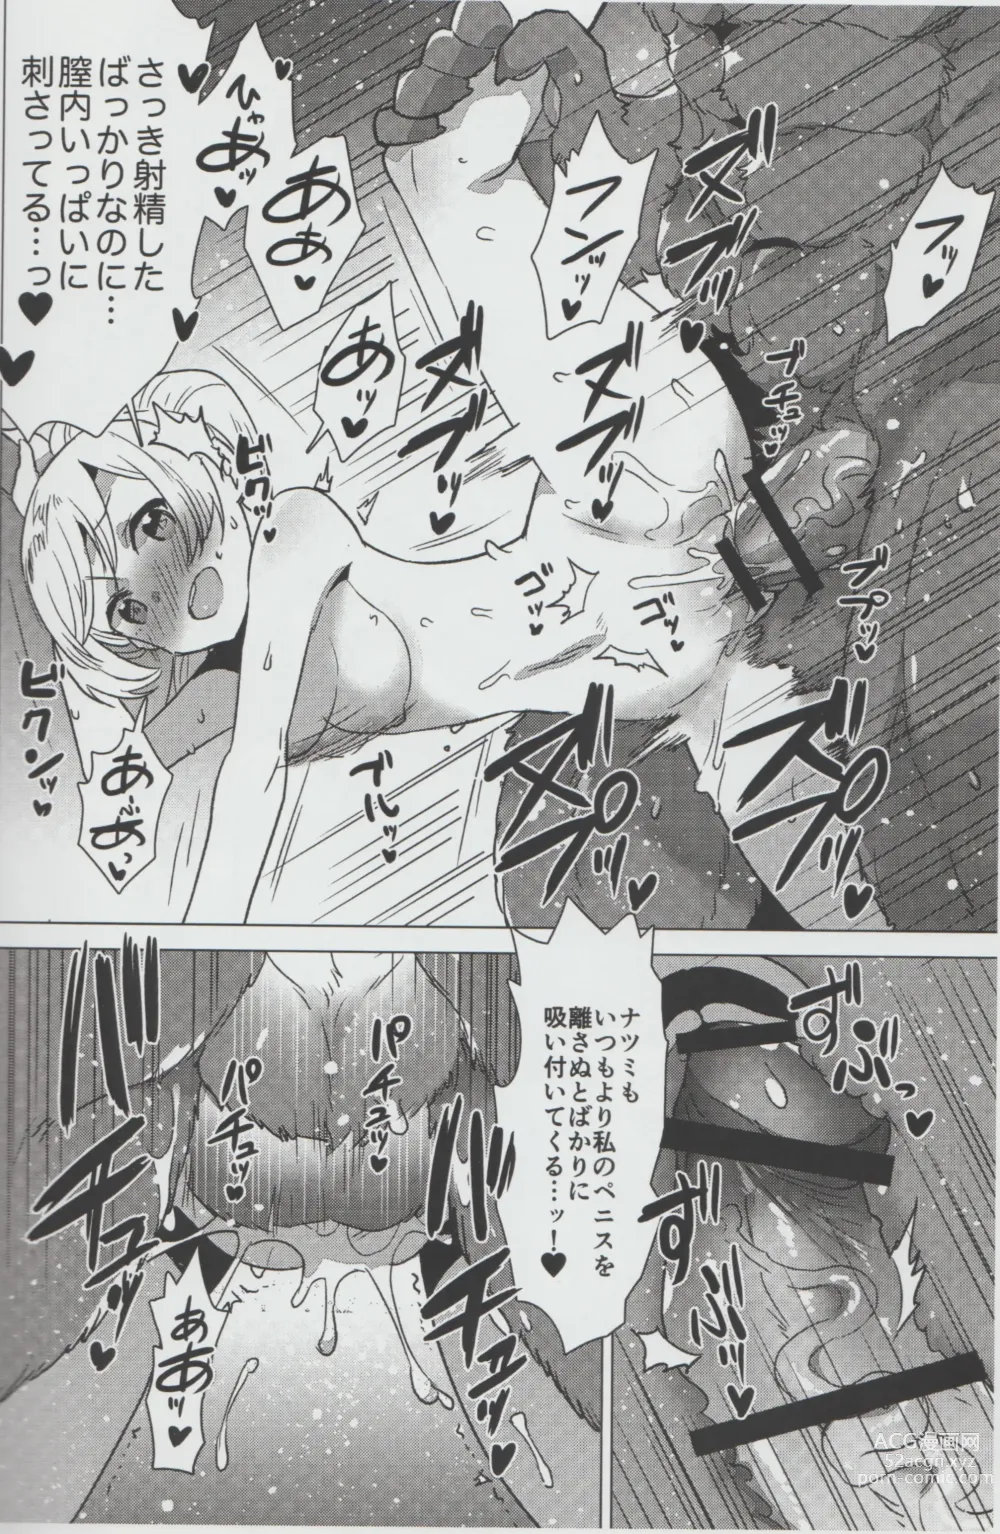 Page 13 of doujinshi Mihoshi Ginza Shopping Street Kaihoushi vol. 04